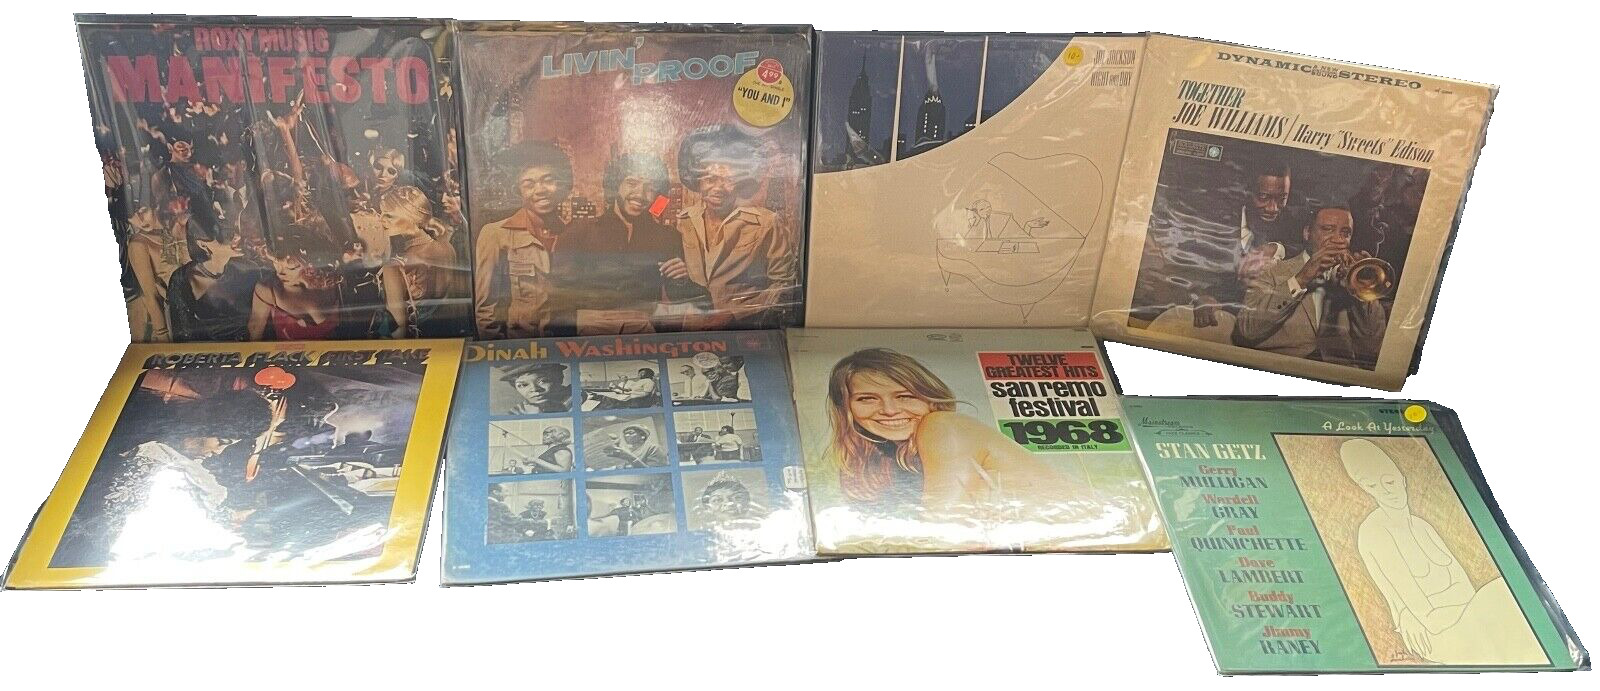 Select 2 LPs for $10-Jeff Beck, Men at Work, Stan Getz, The Doors...Vinyl LP Rec